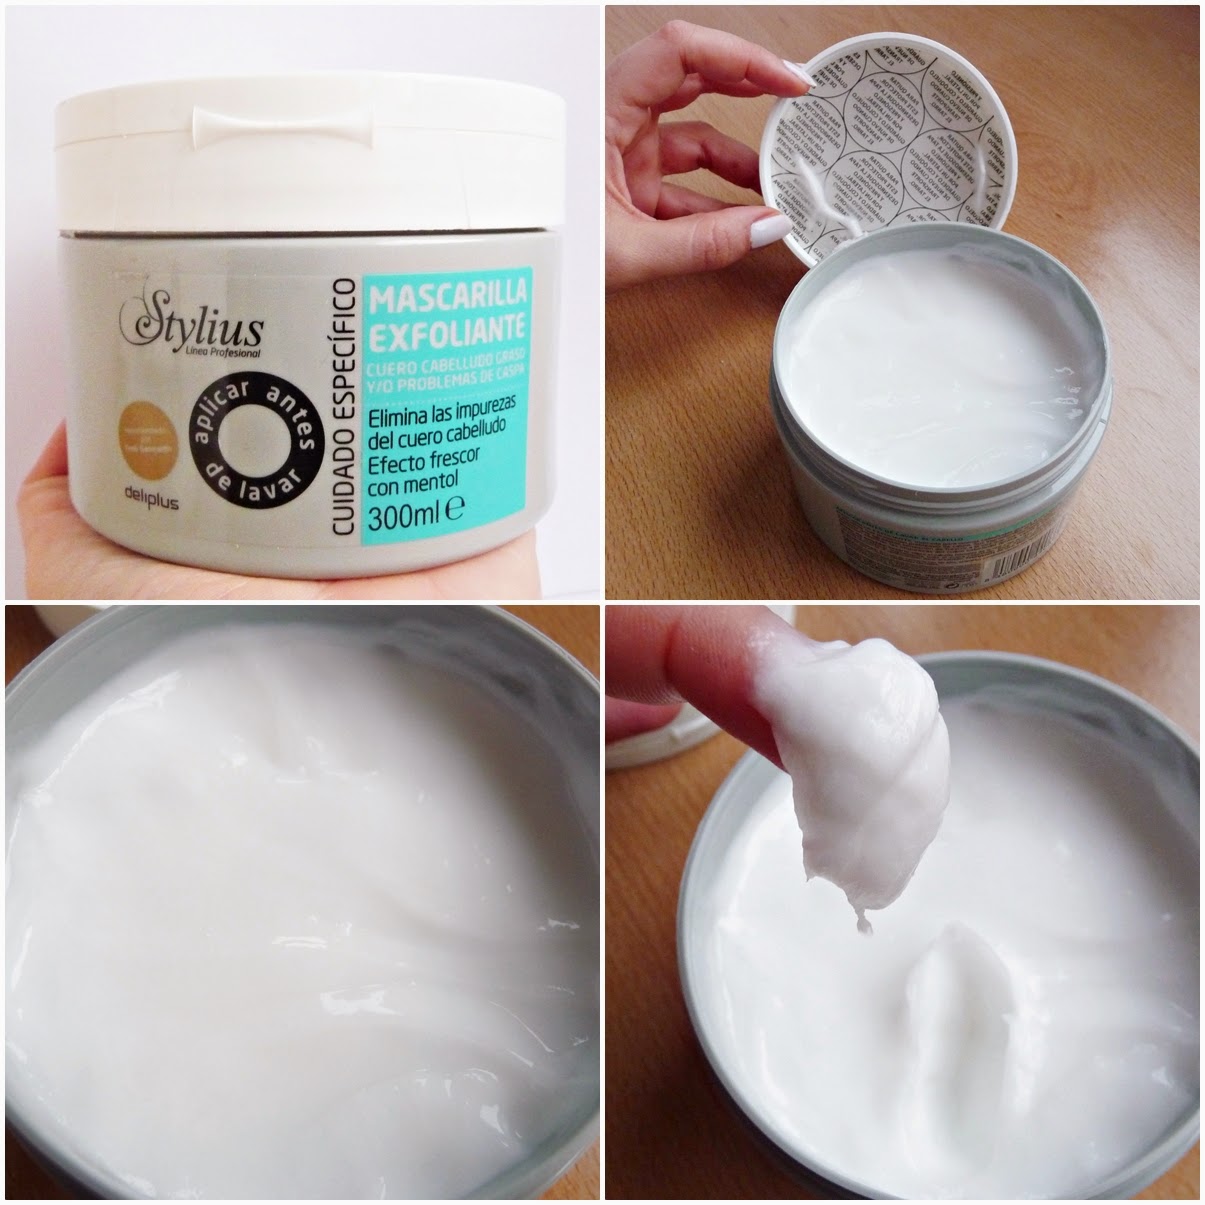 Envuelta en crema: ¿Un producto sorprendentemente para las descamaciones o pura Mascarilla Exfoliante Stylus de Deliplus